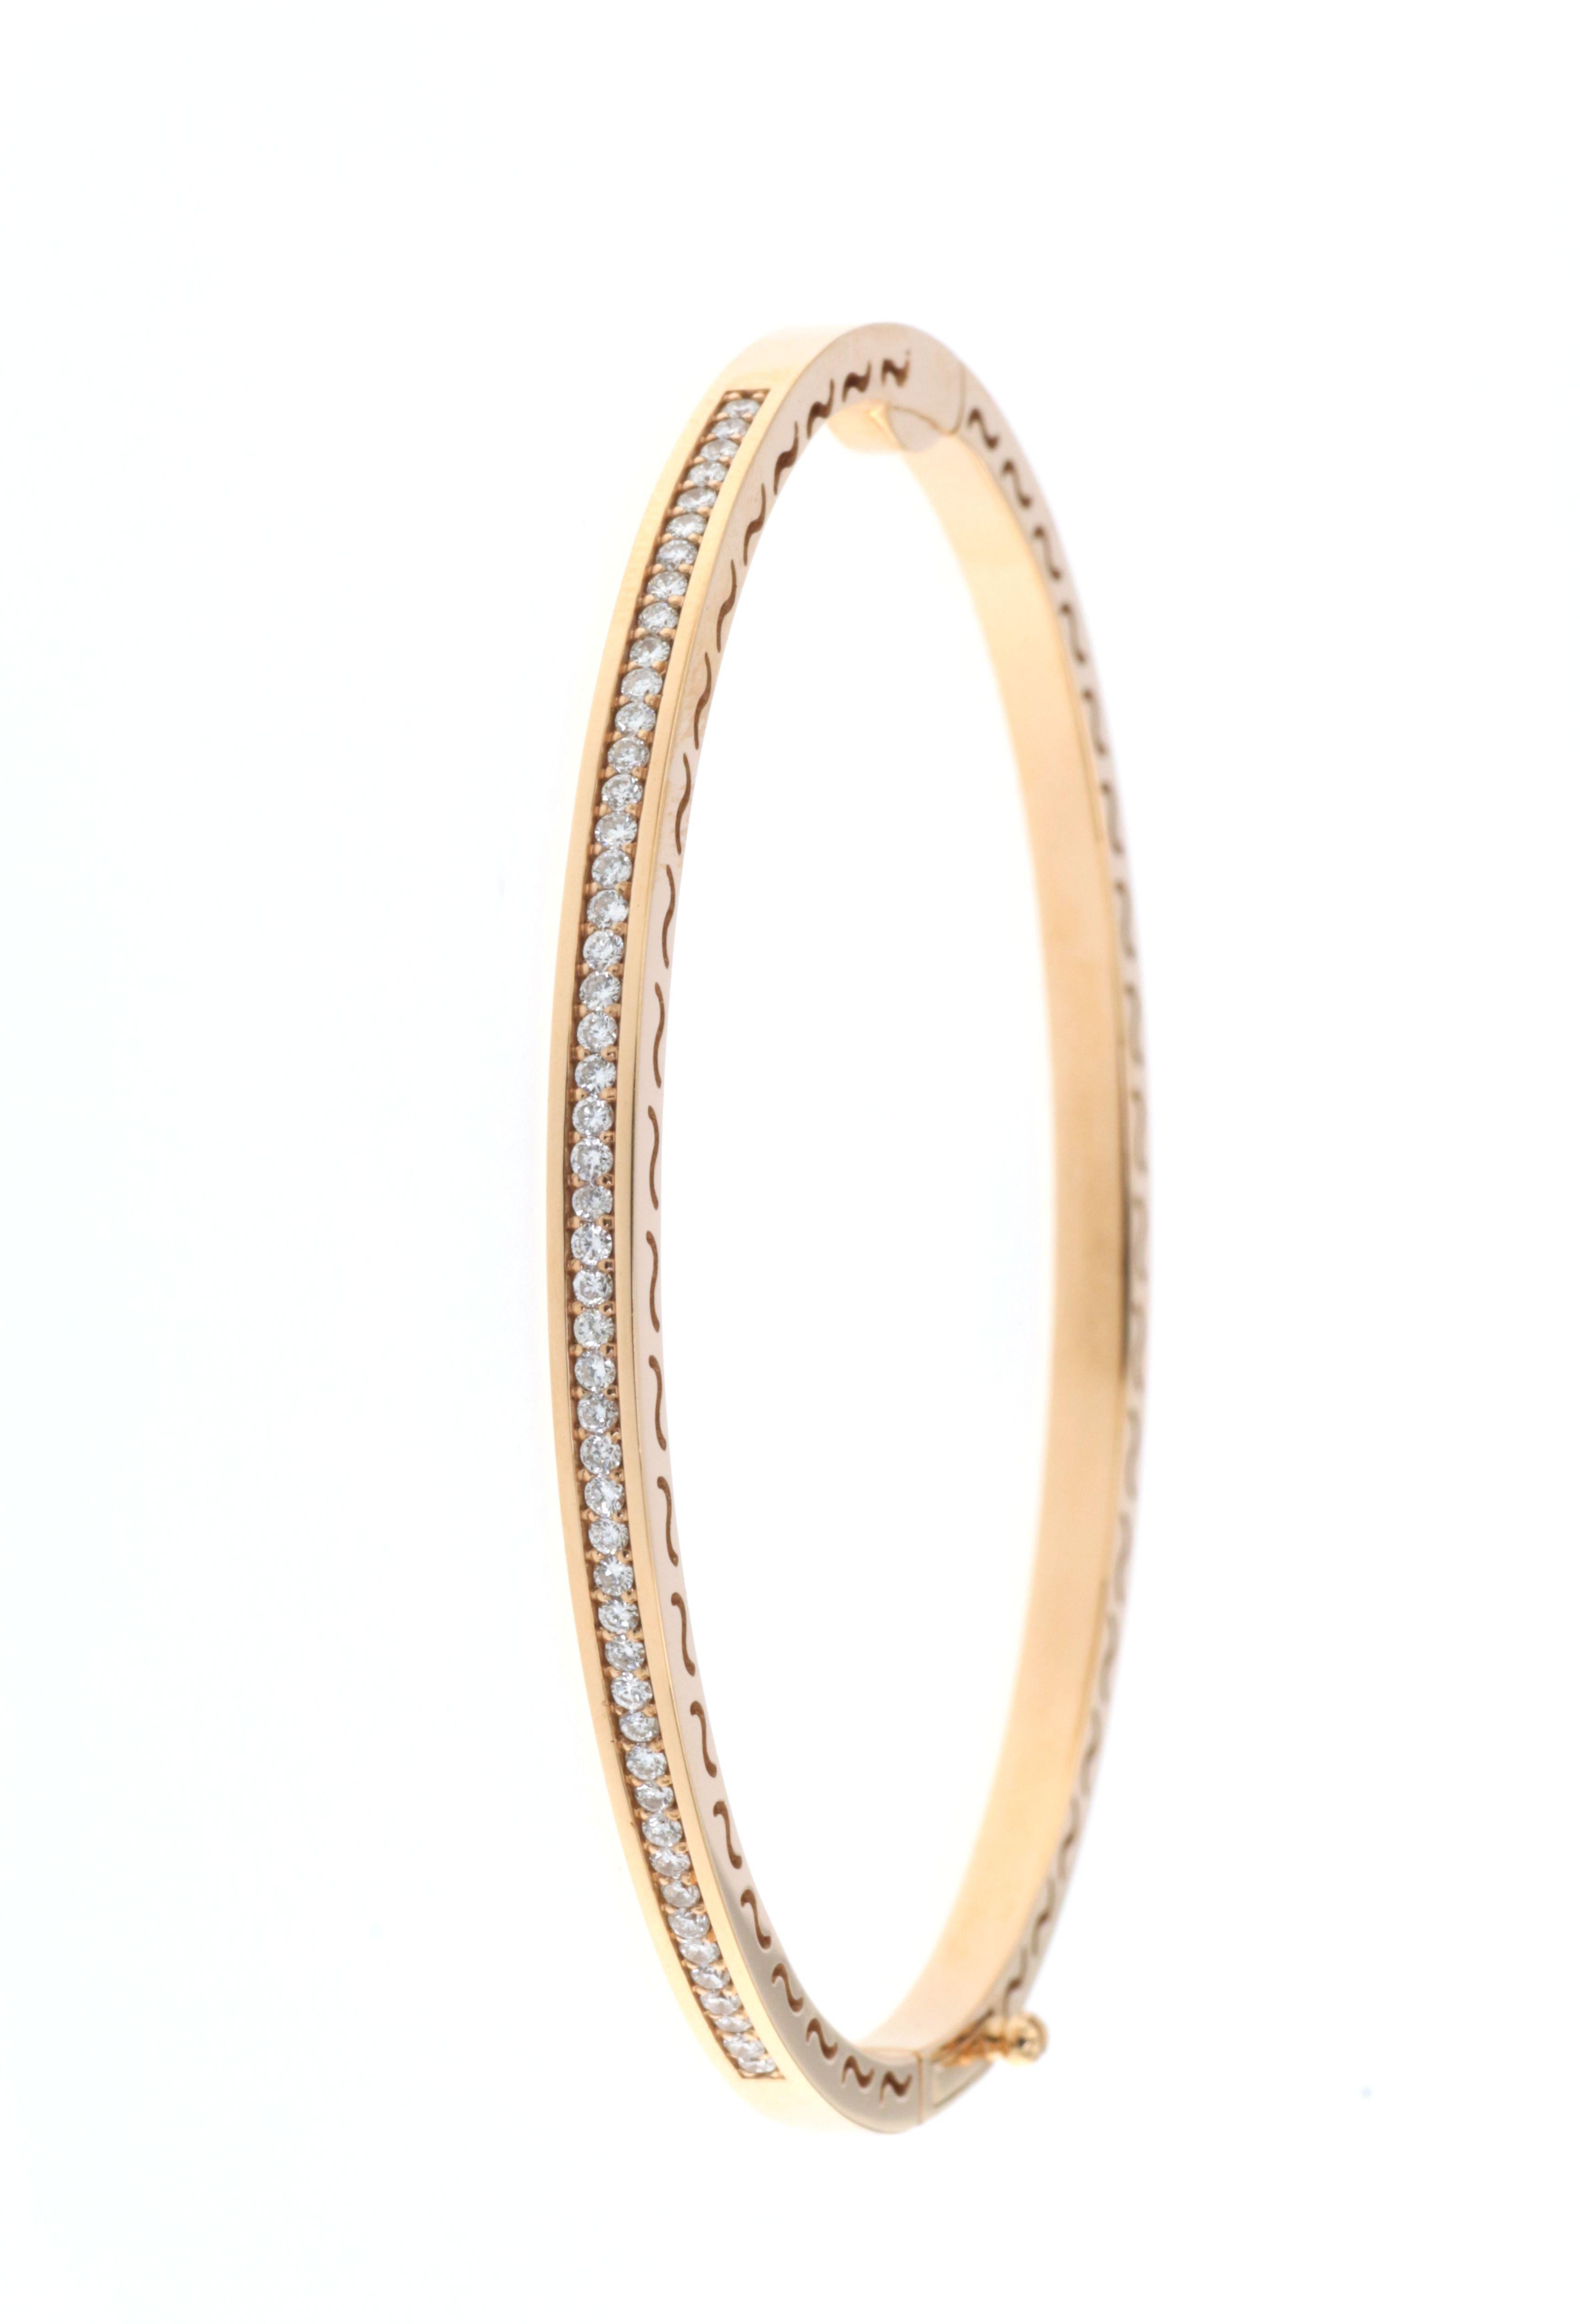 Dieser aus feinstem 18-karätigem Roségold gefertigte Armreif ist eine Studie in Eleganz und Schlichtheit. Er zeichnet sich durch eine durchgehende Linie runder Diamanten aus, die zusammen 0,55 Karat wiegen. Die Diamanten sind so gefasst, dass sie